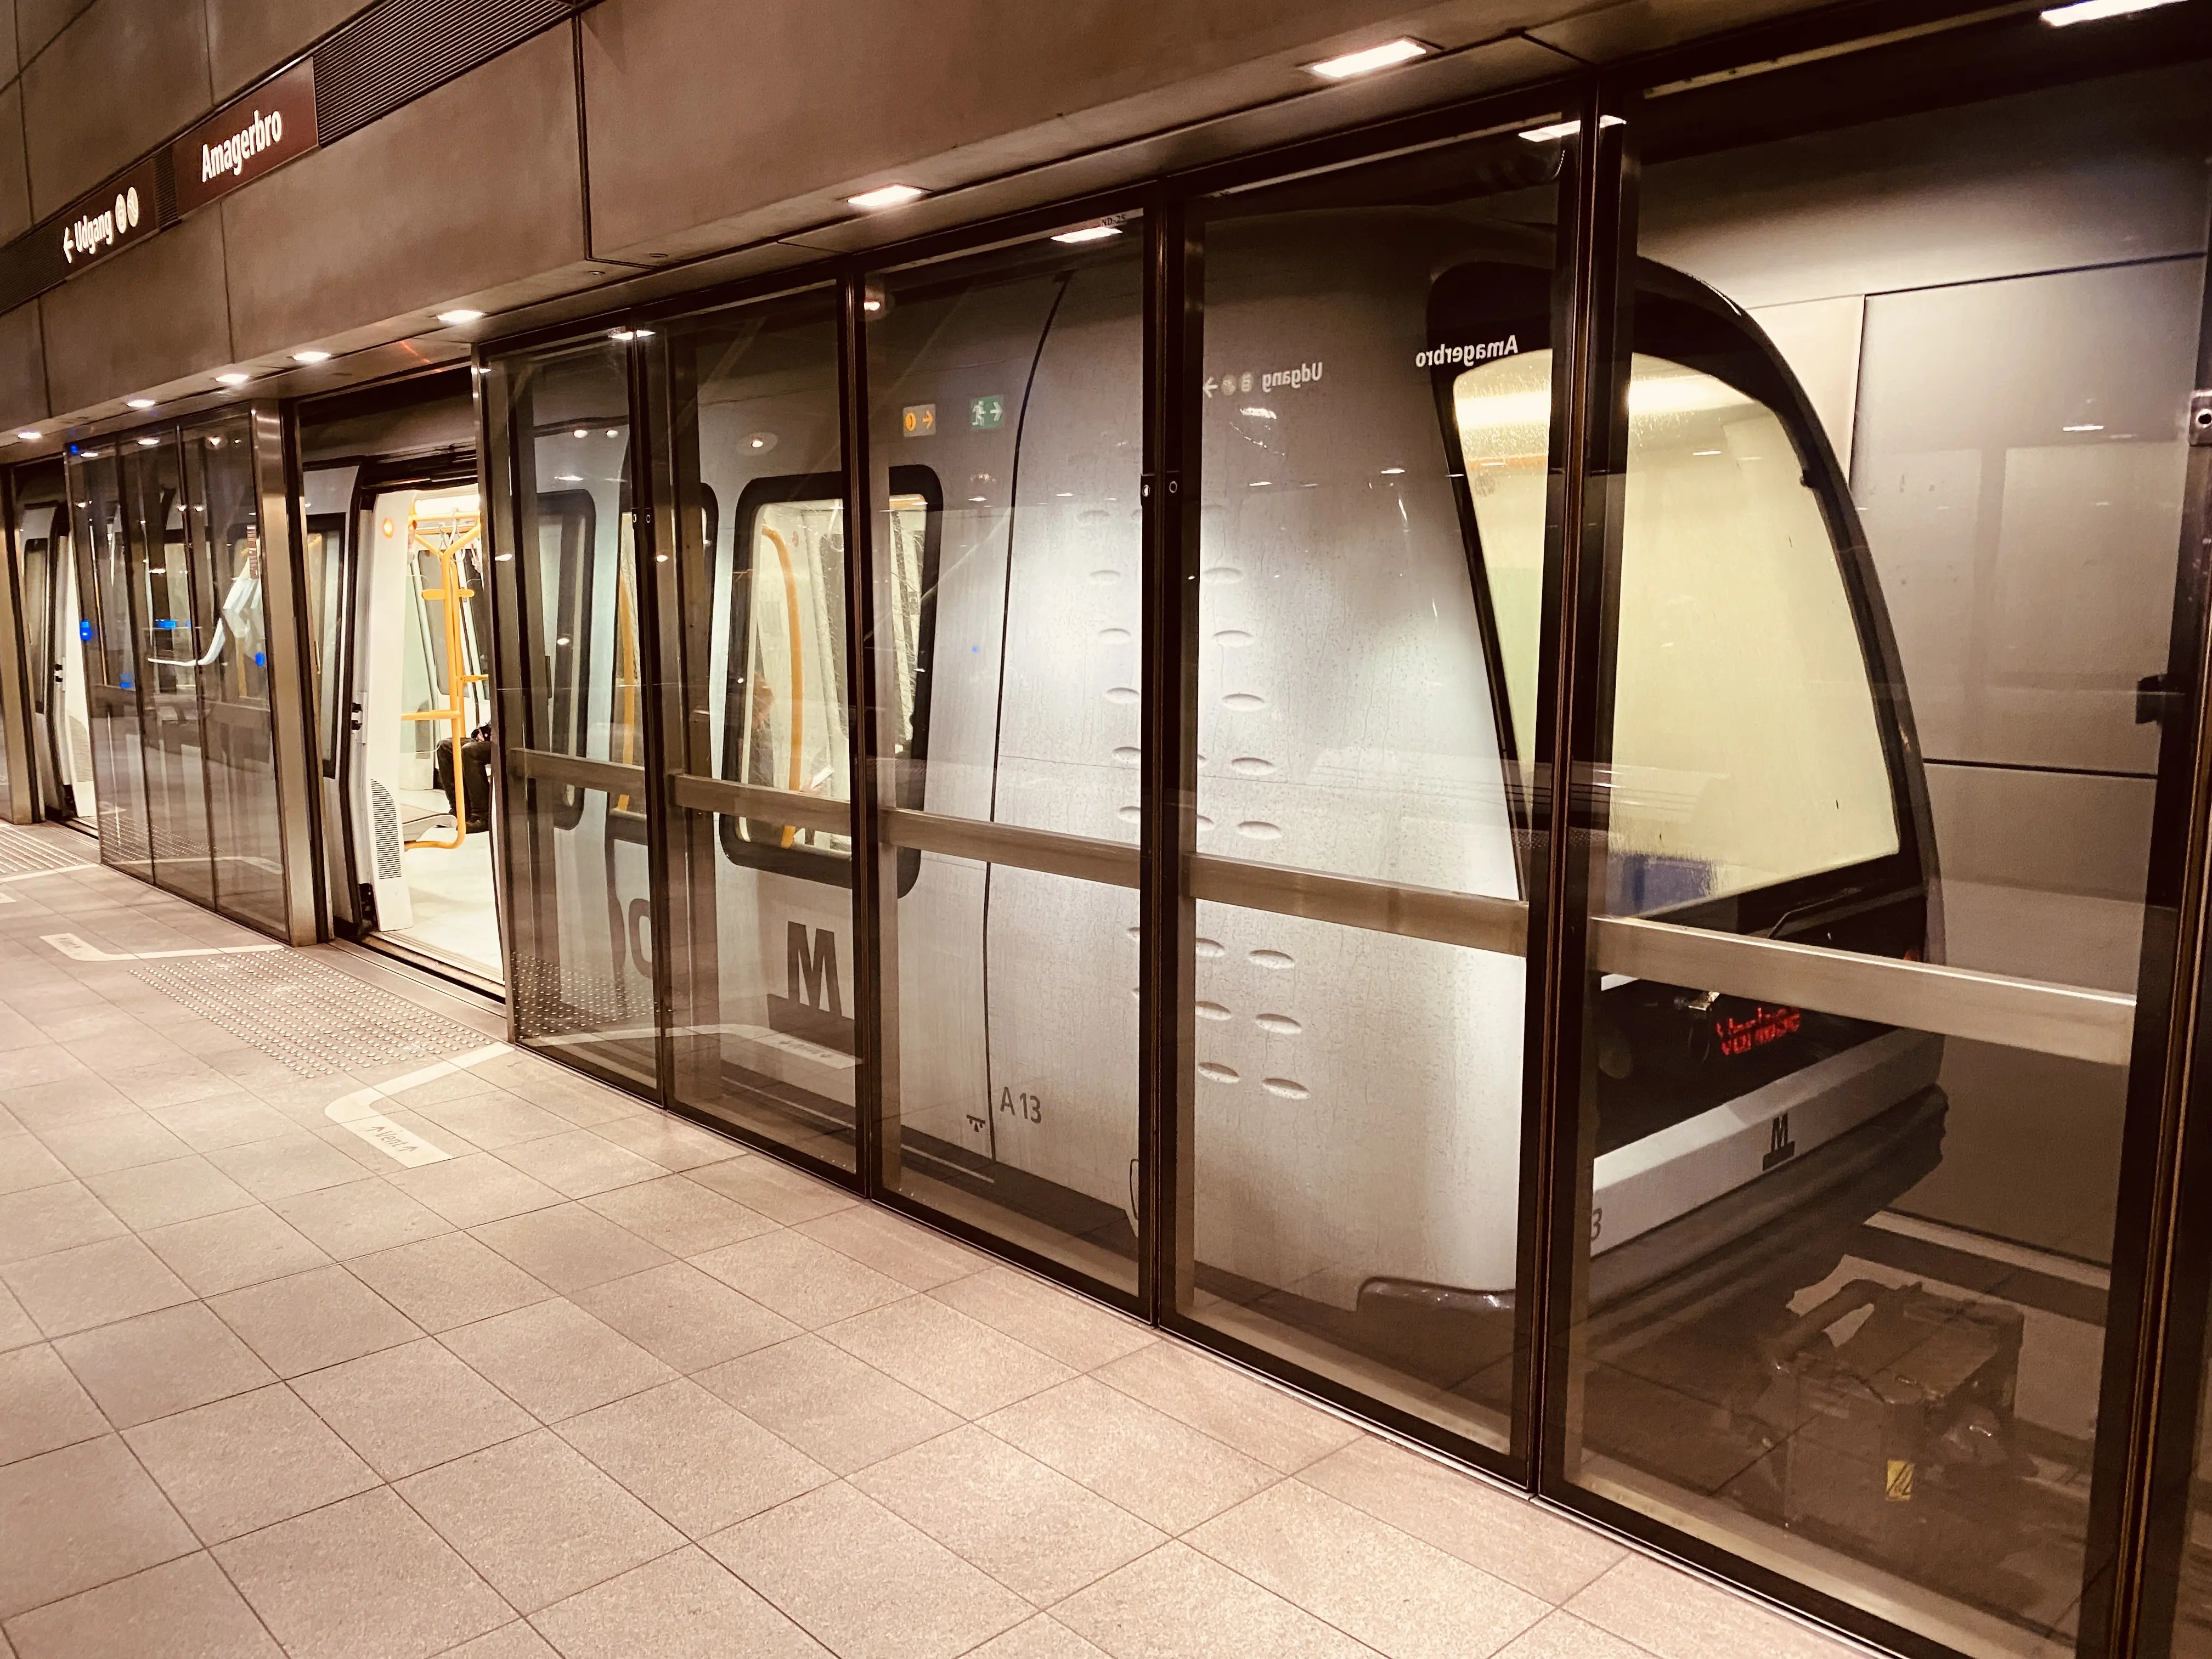 Billede af Amagerbro Metrostation.